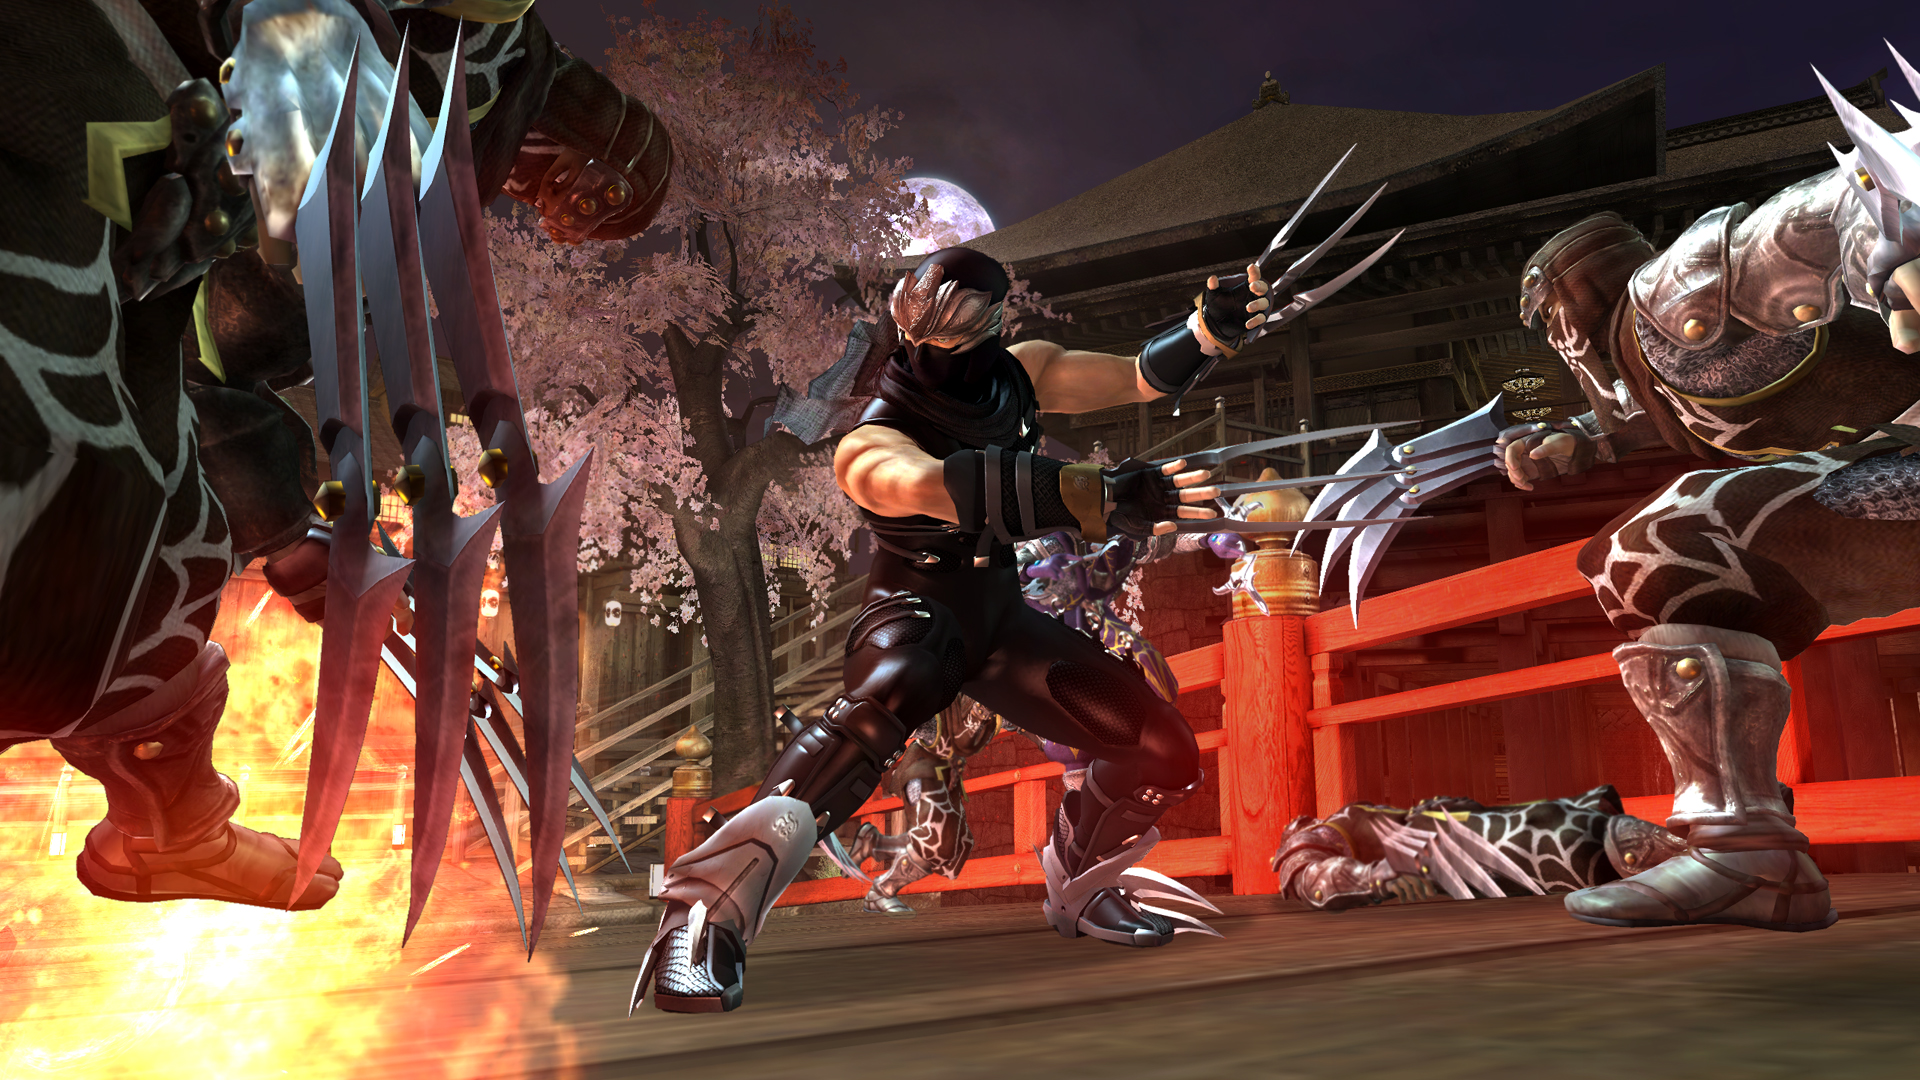 Ninja Gaiden II' offers challenges aplenty